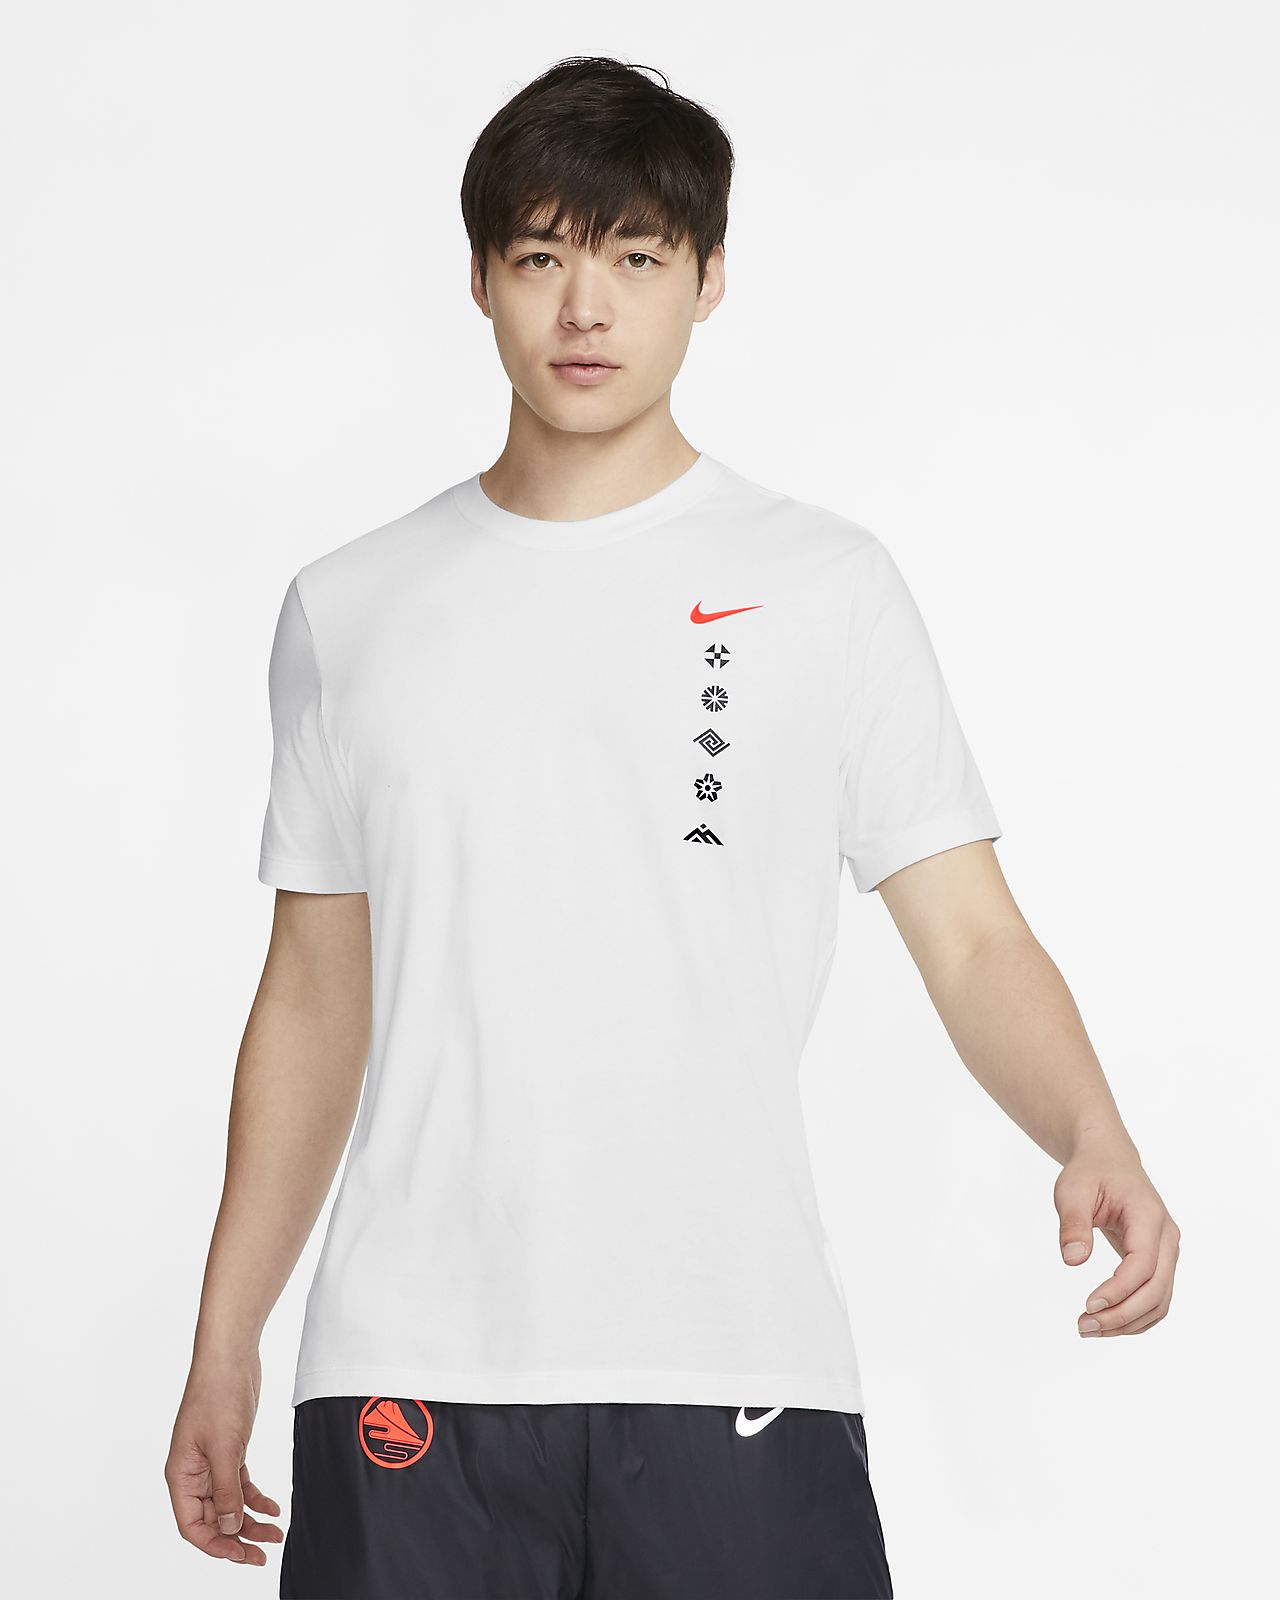 Nike公式 ナイキ Dri Fit メンズ ランニング Tシャツ オンライン